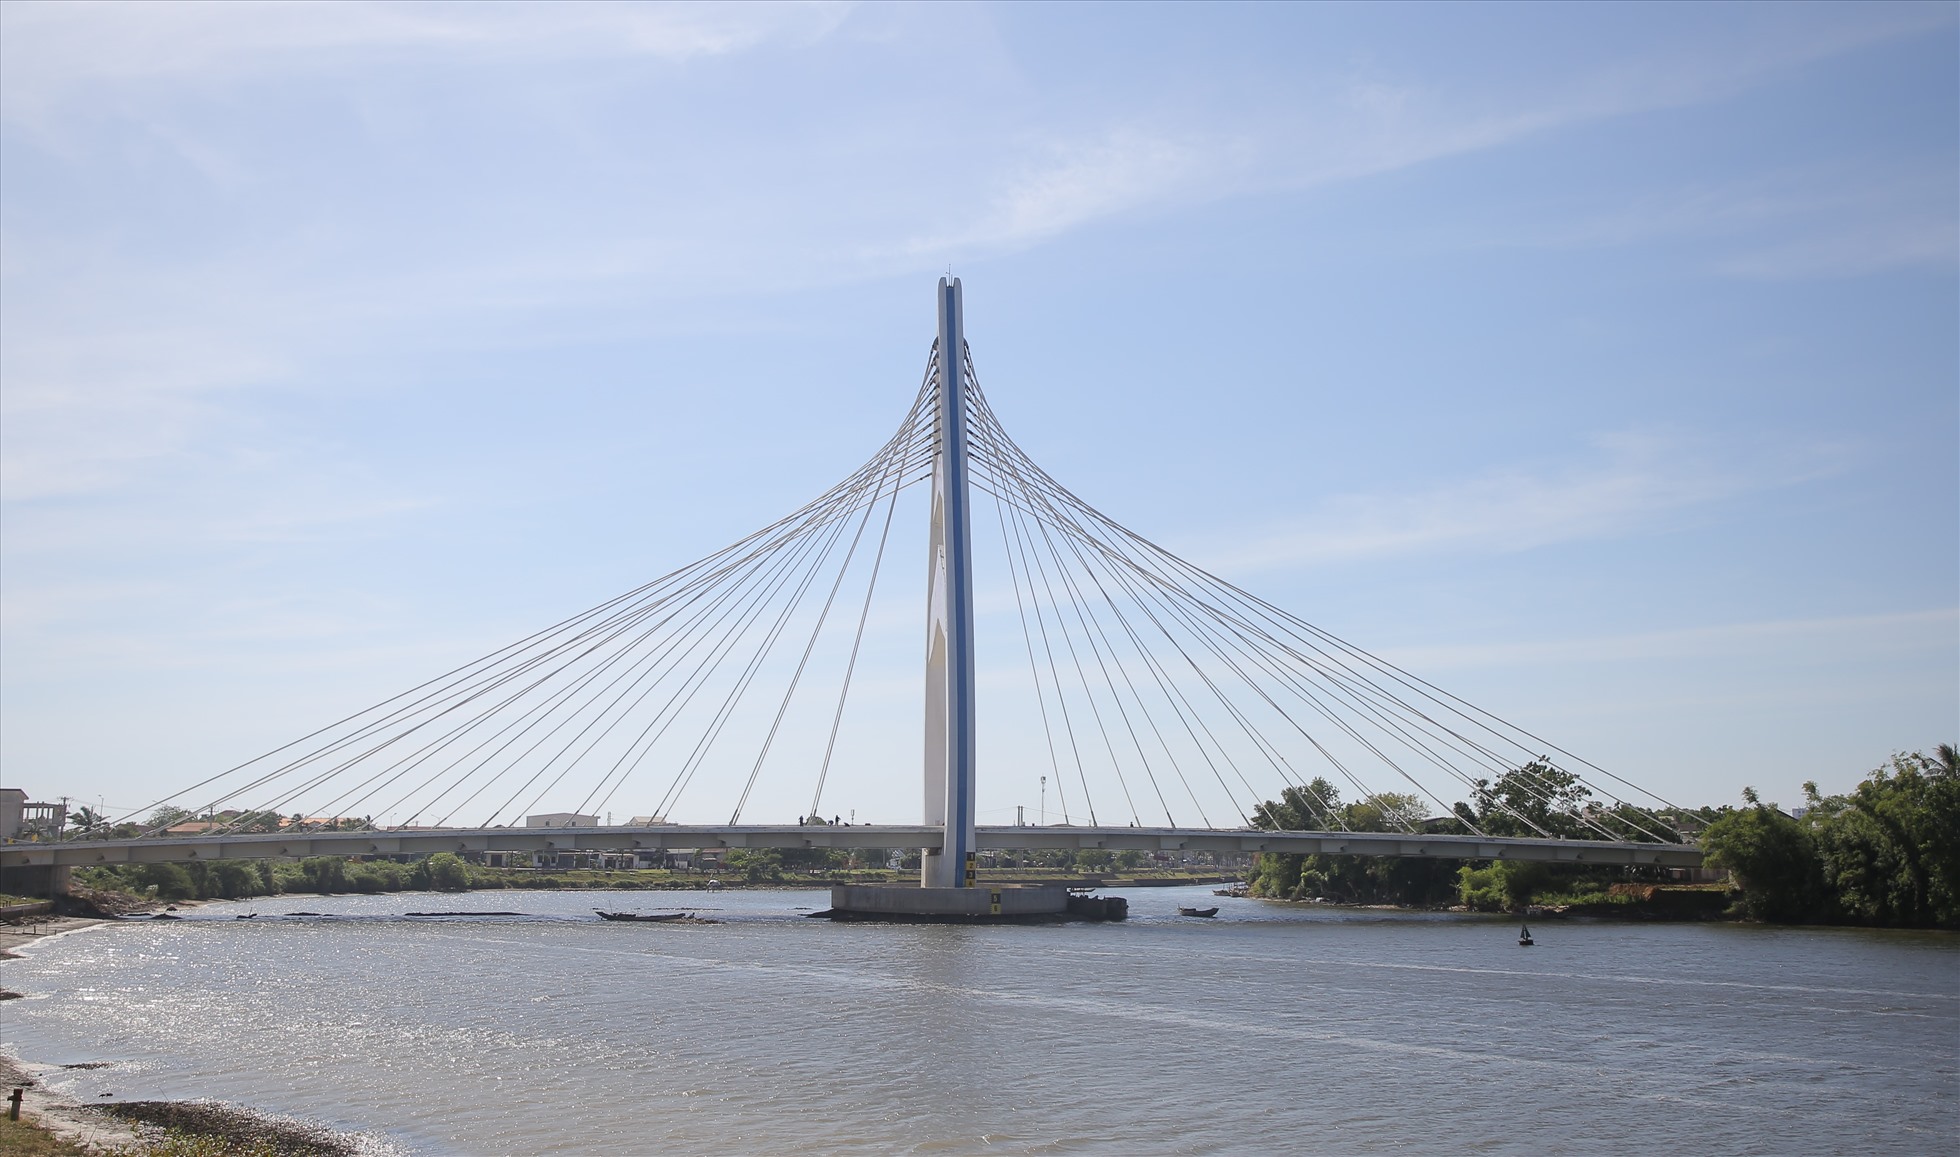 Cầu dây văng sông Hiếu (thành phố Đông Hà, tỉnh Quảng Trị) được khởi công xây dựng từ tháng 4.2020, dự kiến hoàn thành tháng 6.2022. Công trình dài hơn 300m, mặt đường 4 làn xe cơ giới, tháp cao 73m mô phỏng theo hình búp sen, tổng mức đầu tư hơn 200 tỉ đồng.